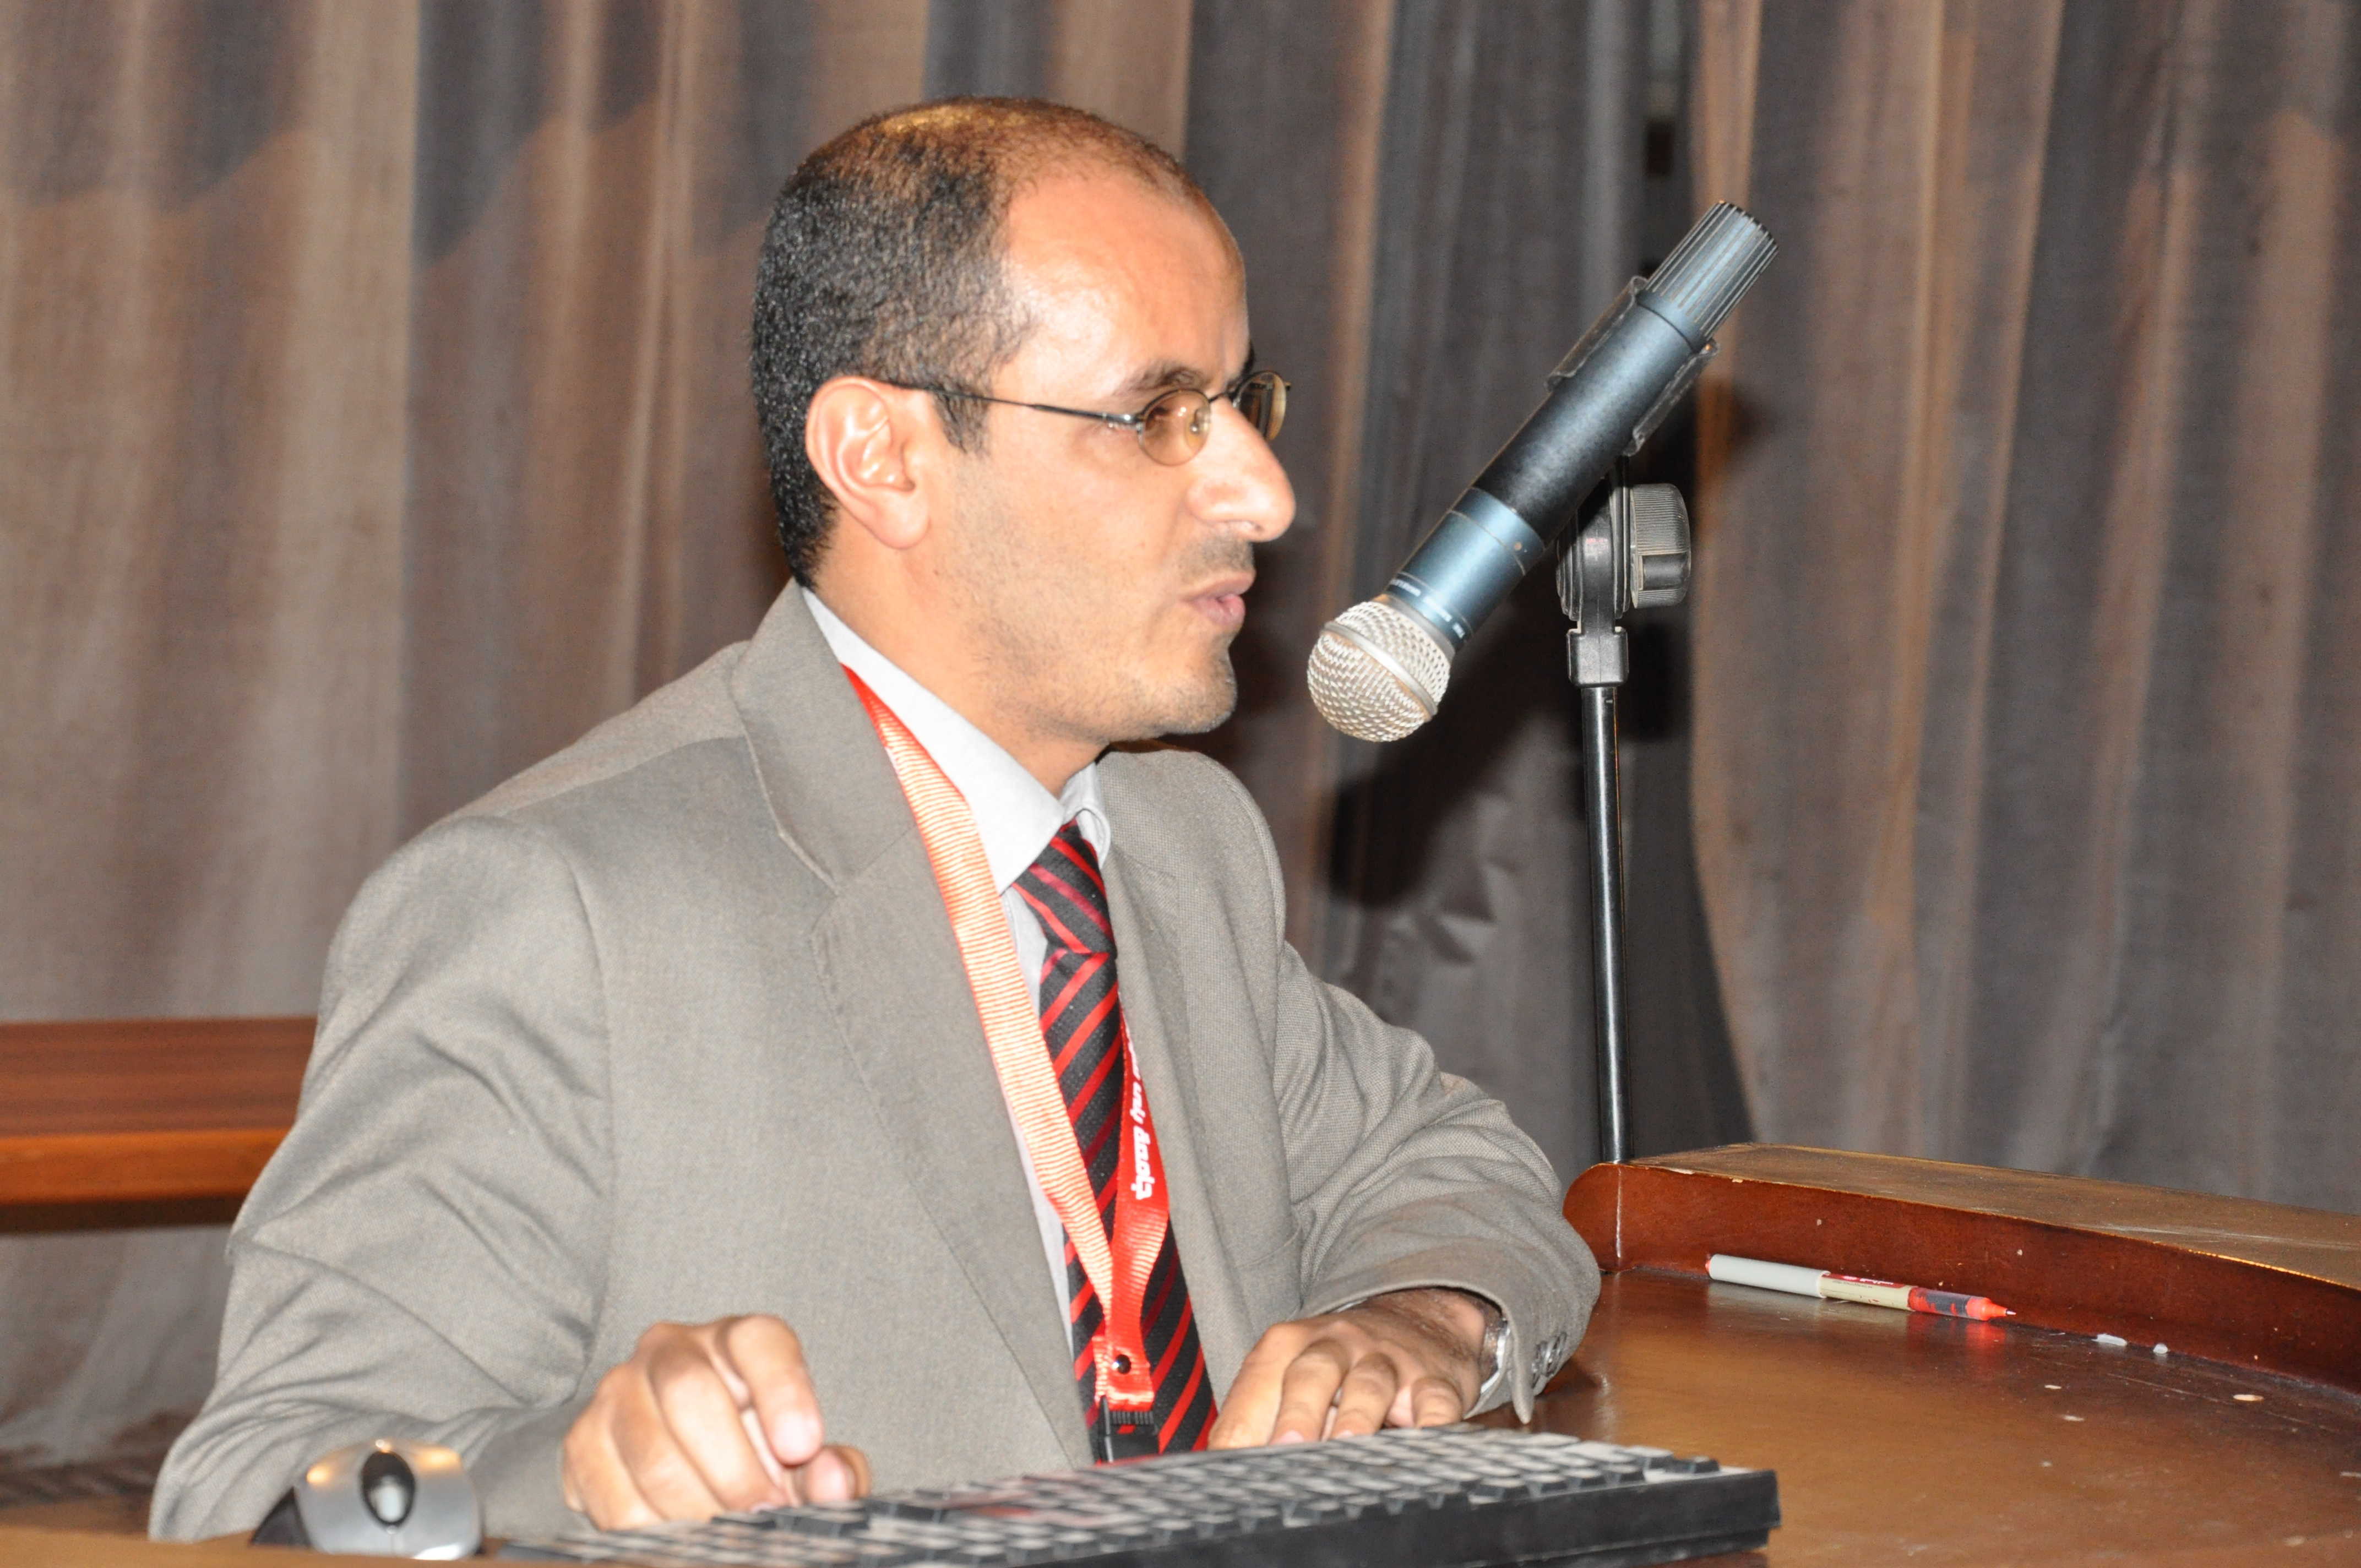 برنامج اعداد السيرة الذاتية (cv) يقدمه المدرب الاستاذ الدكتور عبدالوهاب عبدالله أحمد المعمري